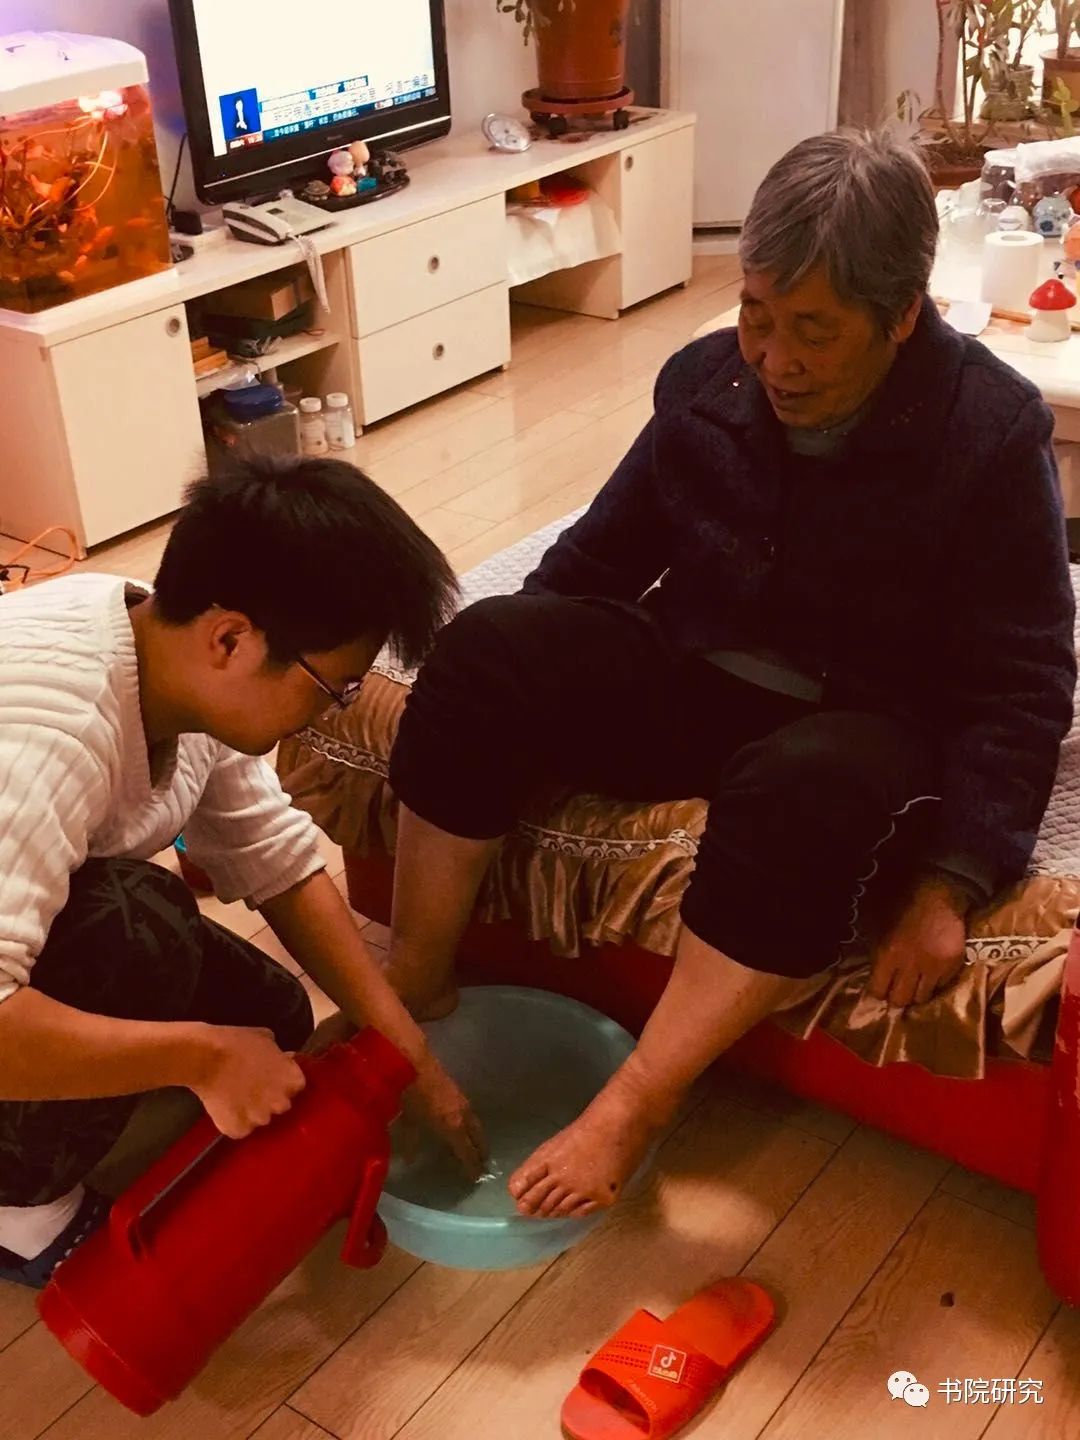 申昊宇同学在帮奶奶准备洗脚水,用手试试水温是否合适